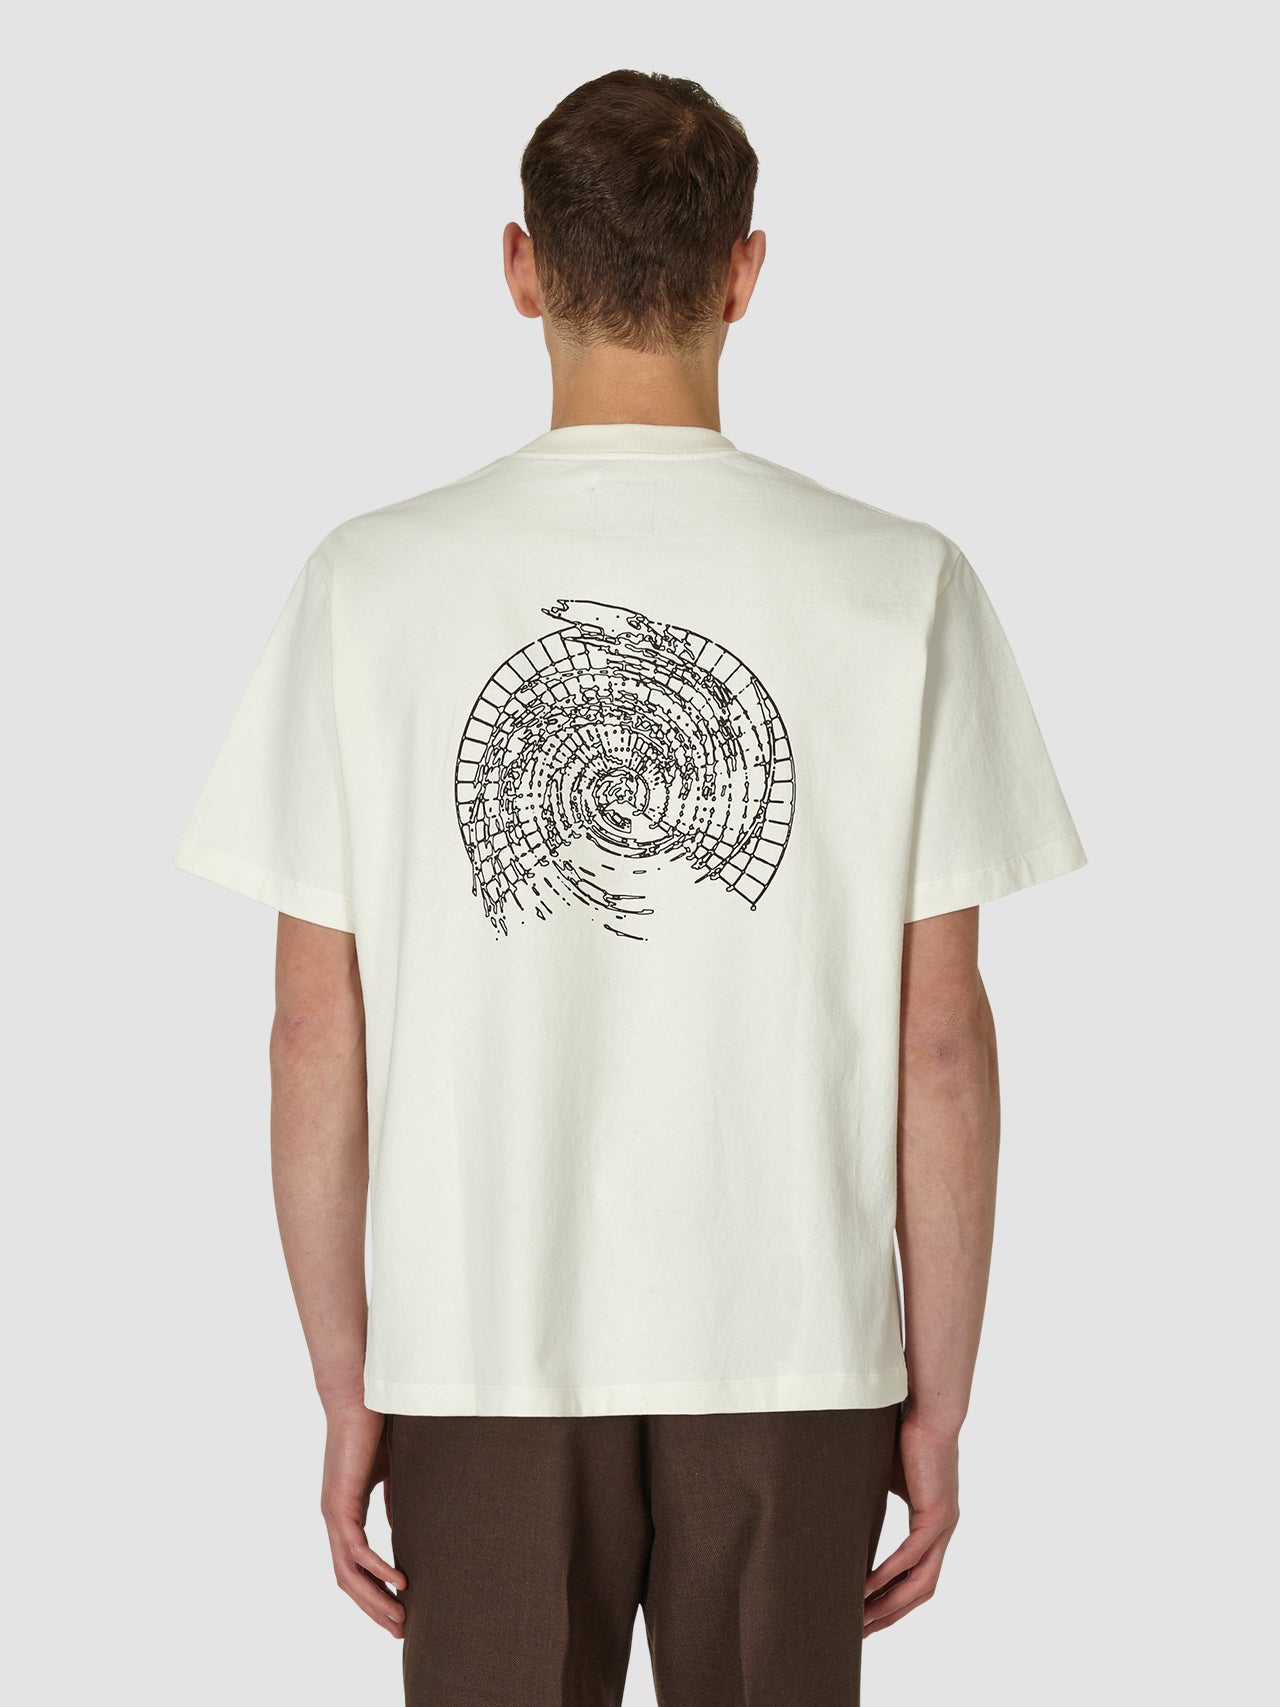 the-lair-ROA-Hiking-Logo-Tee-Shirt-Graphic-white